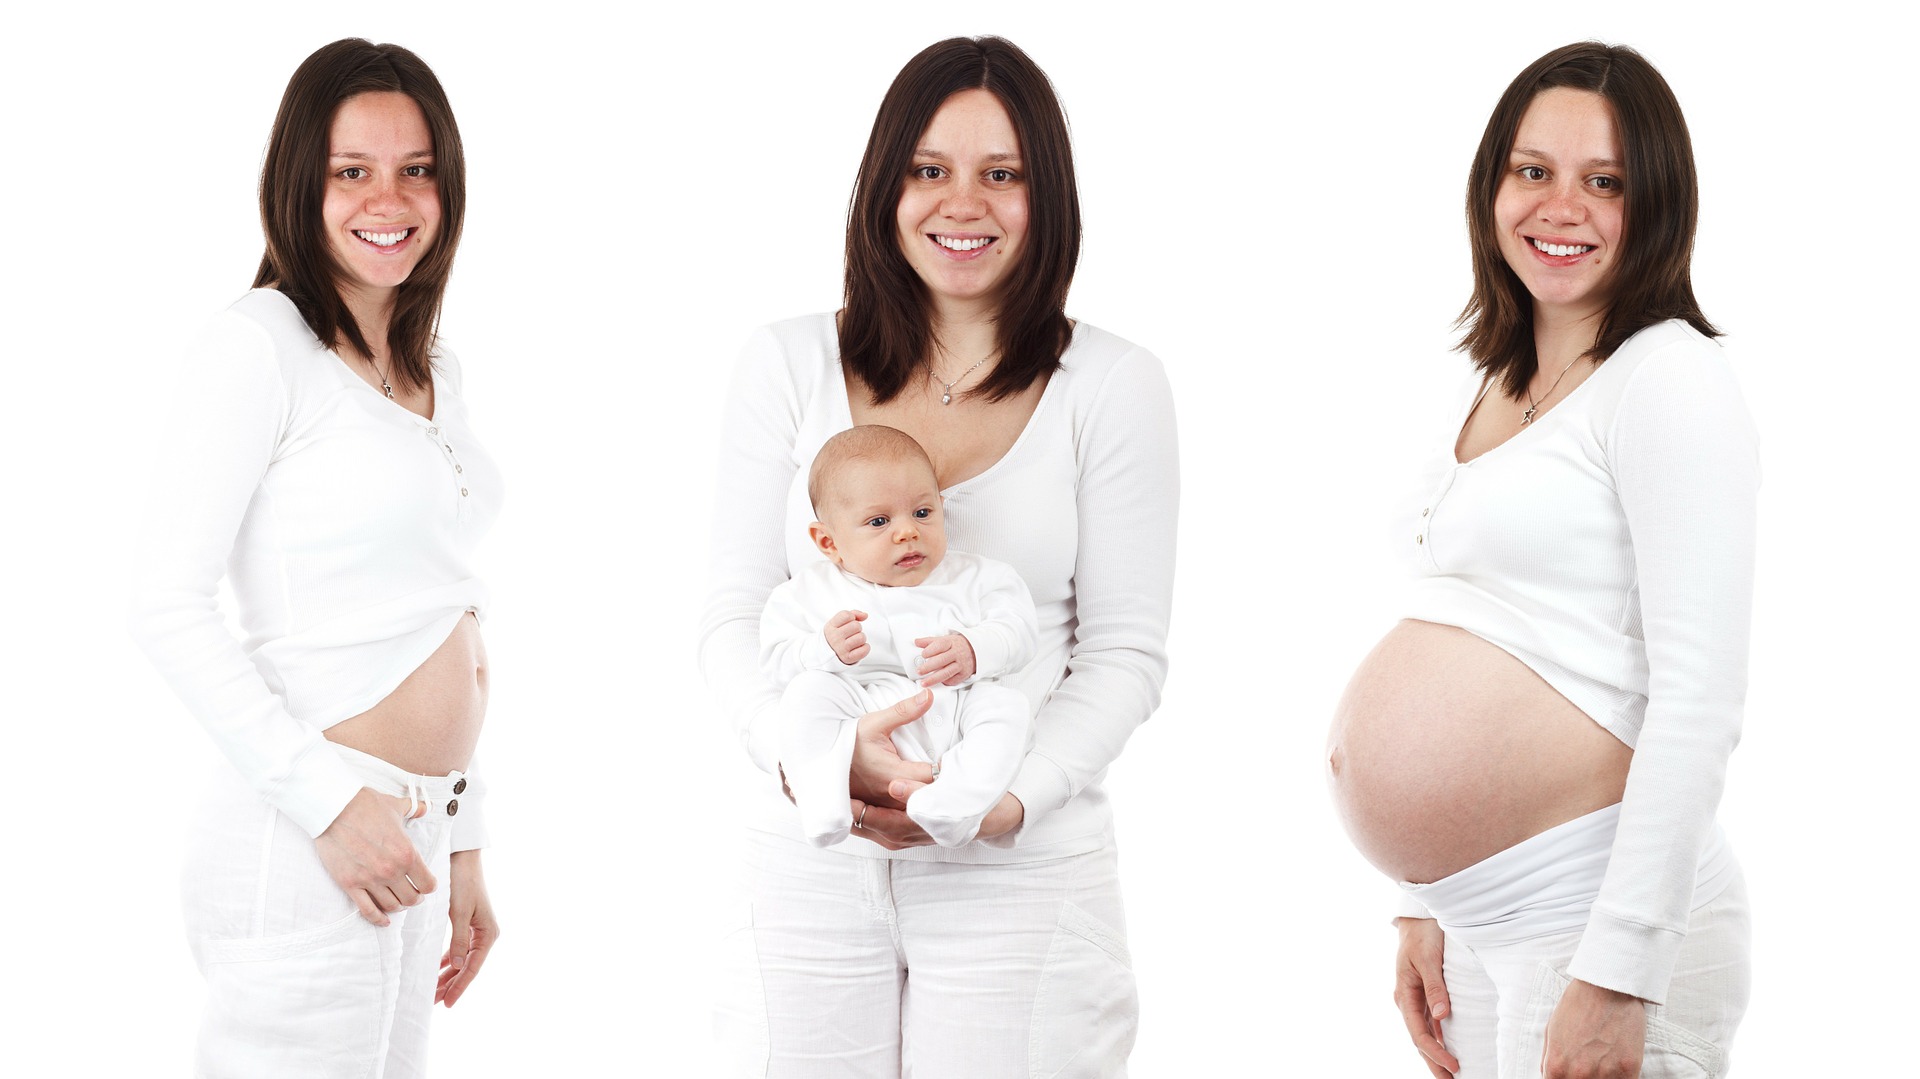 Ciąża, poród, macierzyństwo - darmowy kurs online internetowy szkolenie przez internet